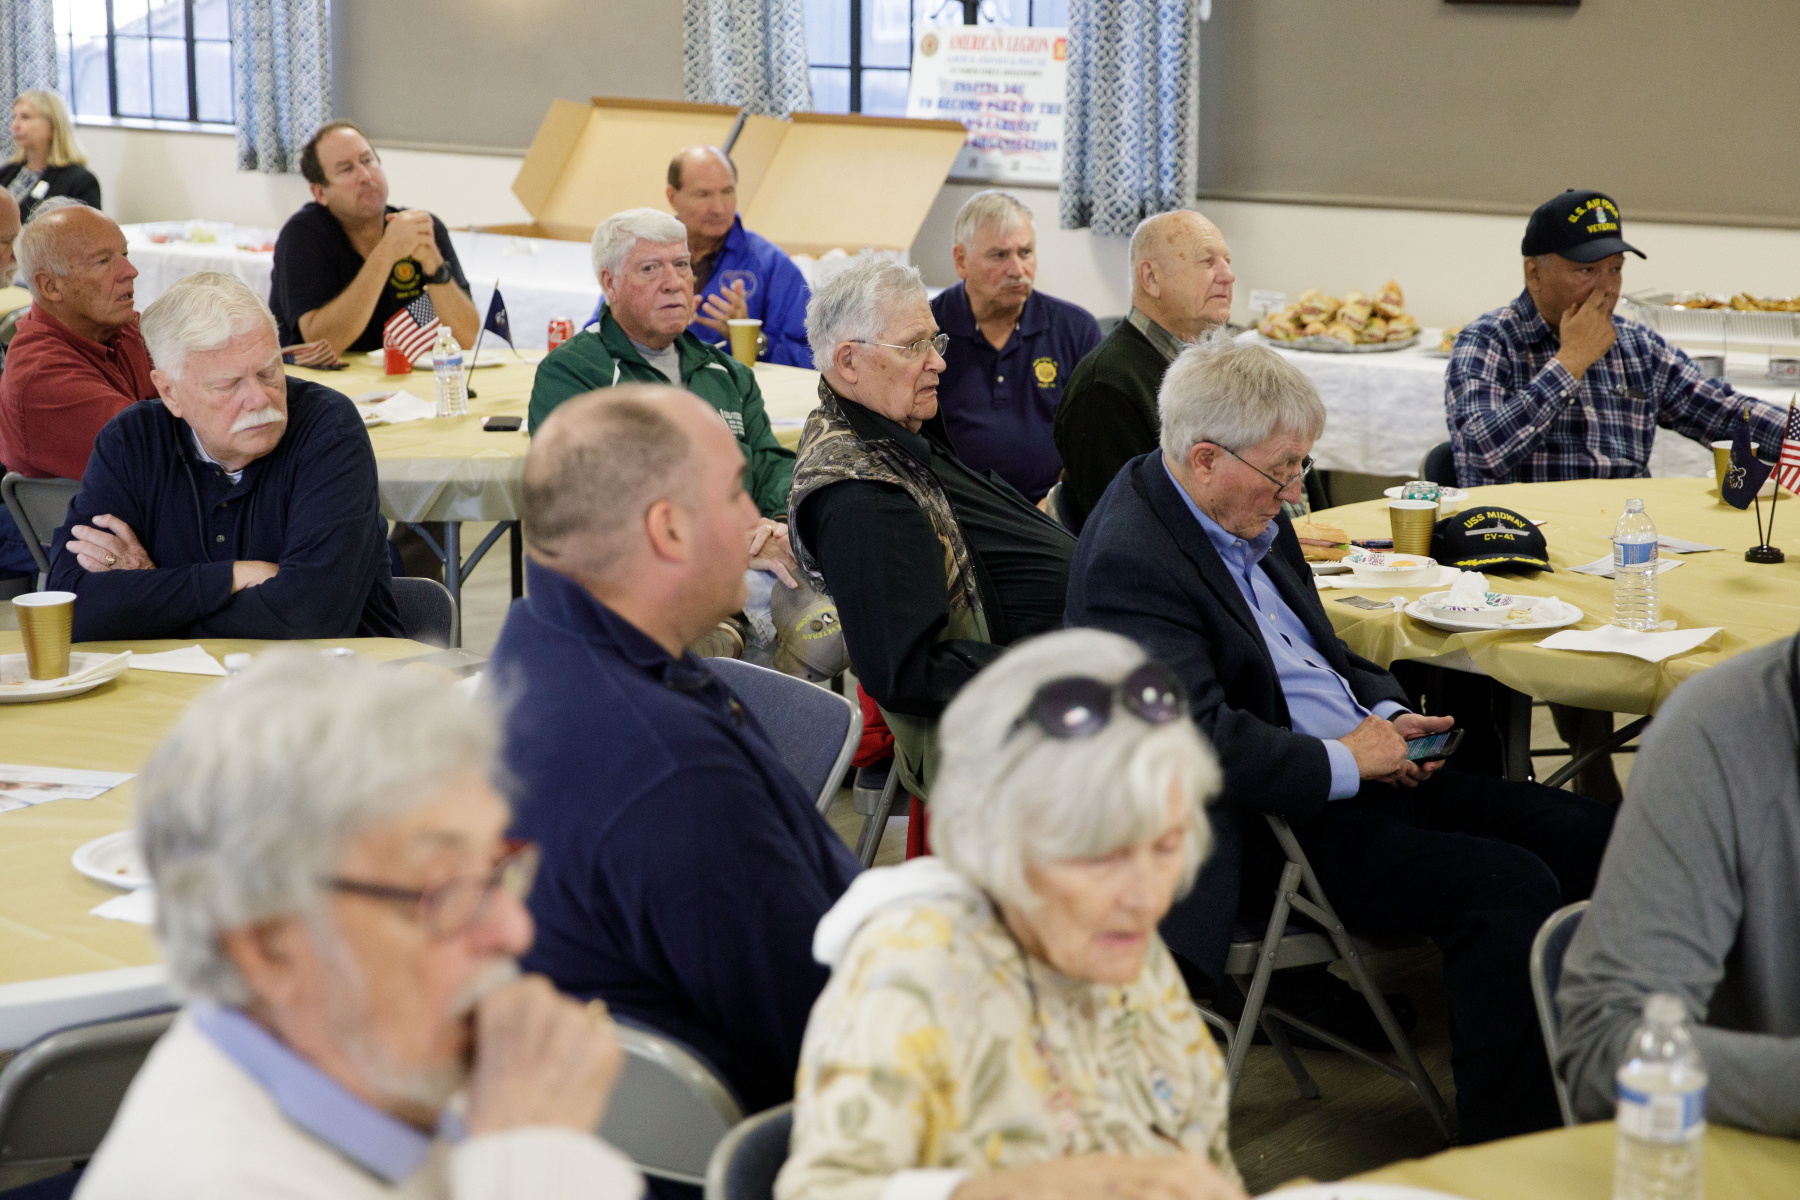 28 de octubre de 2021: El senador estatal Steve Santarsiero organizó su almuerzo anual de veteranos.